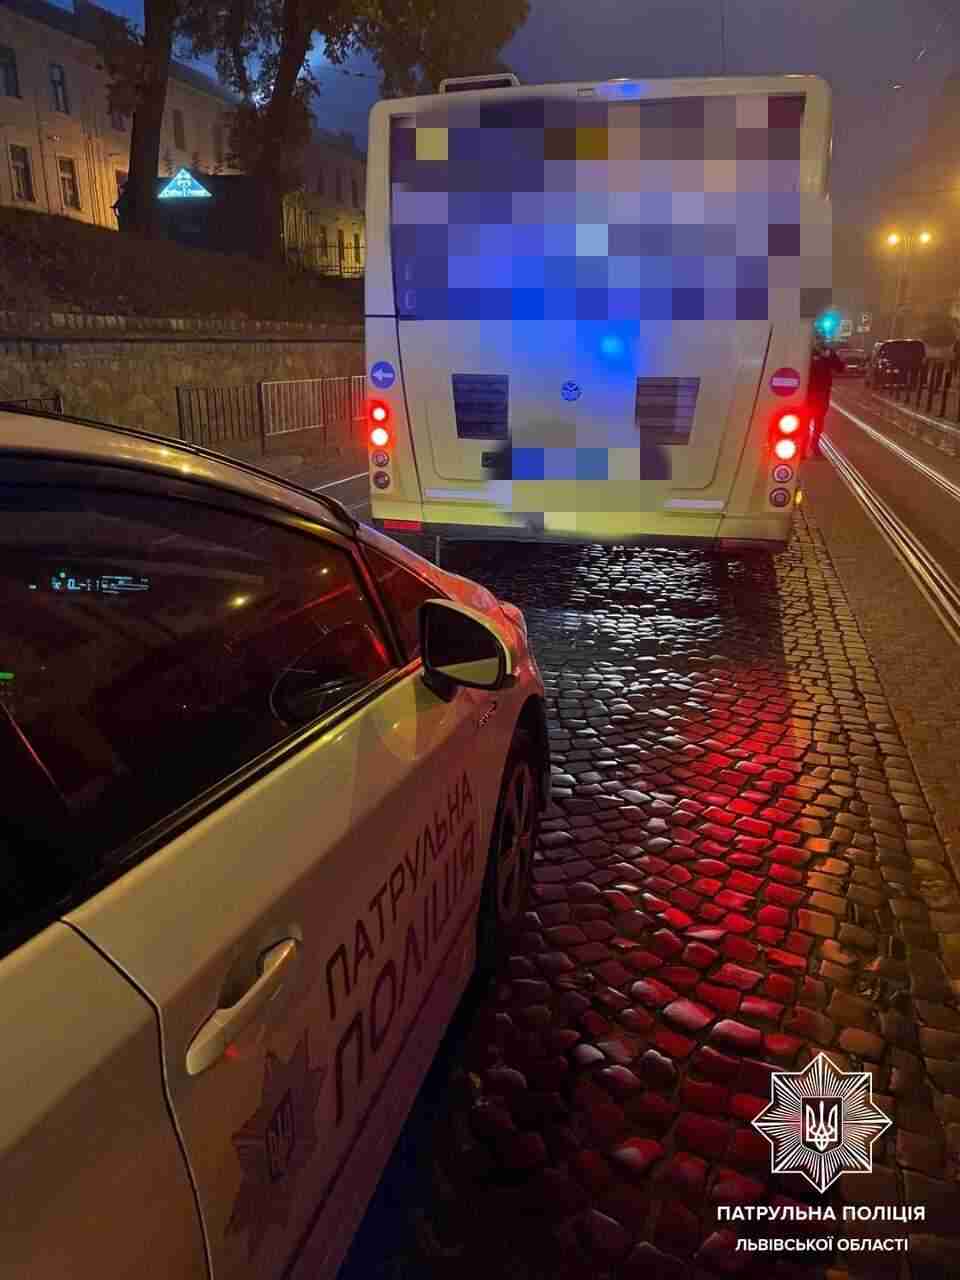 У Львові водій маршрутки отримав штраф за порушення ПДР, завдяки небайдужим очевидцям події (ФОТО)